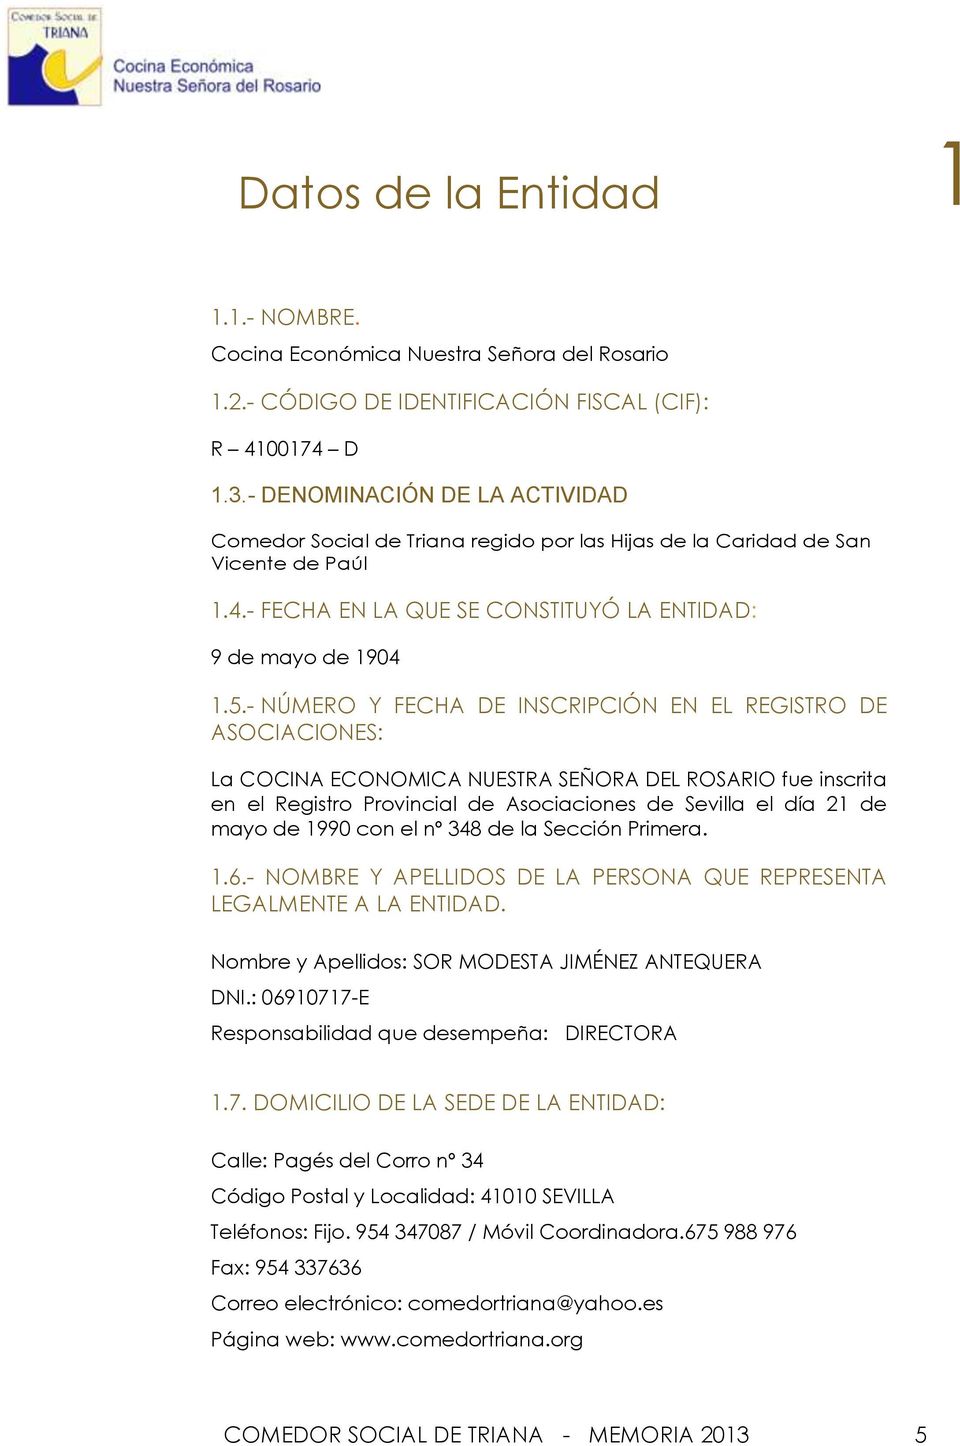 - NÚMERO Y FECHA DE INSCRIPCIÓN EN EL REGISTRO DE ASOCIACIONES: La COCINA ECONOMICA NUESTRA SEÑORA DEL ROSARIO fue inscrita en el Registro Provincial de Asociaciones de Sevilla el día 21 de mayo de